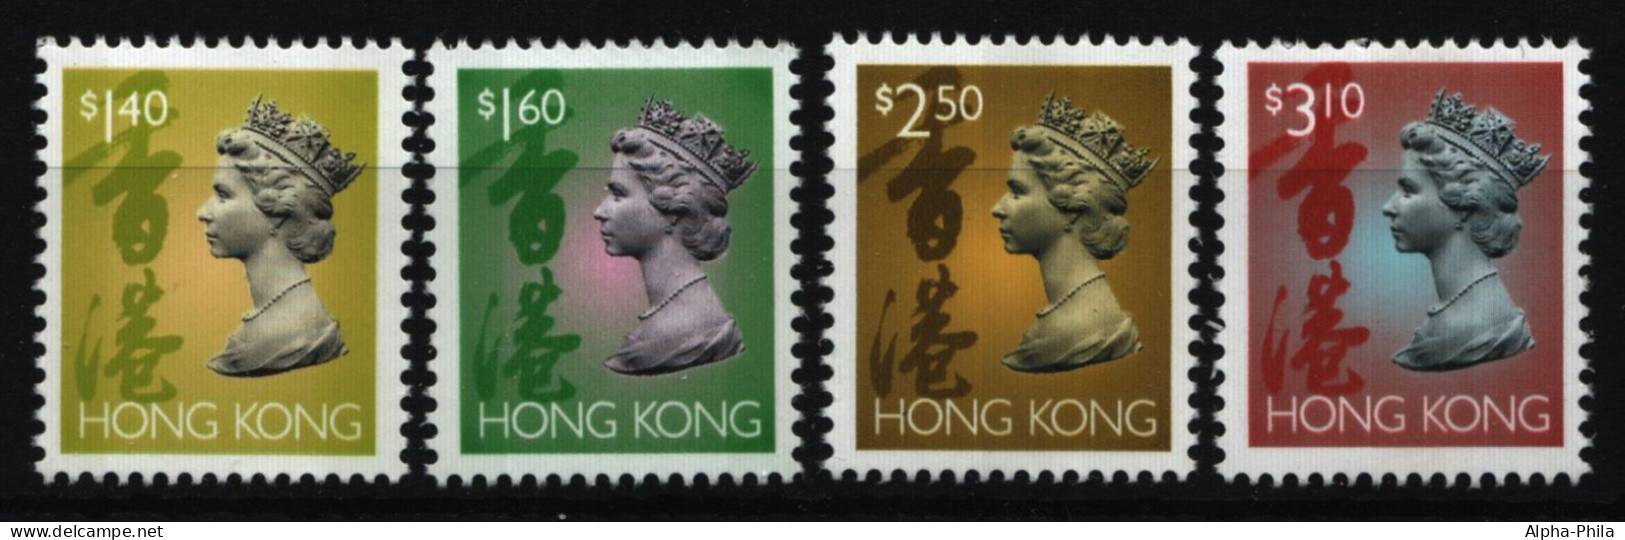 Hongkong 1996 - Mi-Nr. 771-774 I ** - MNH - Freimarken - Queen Elizabeth II - Ongebruikt